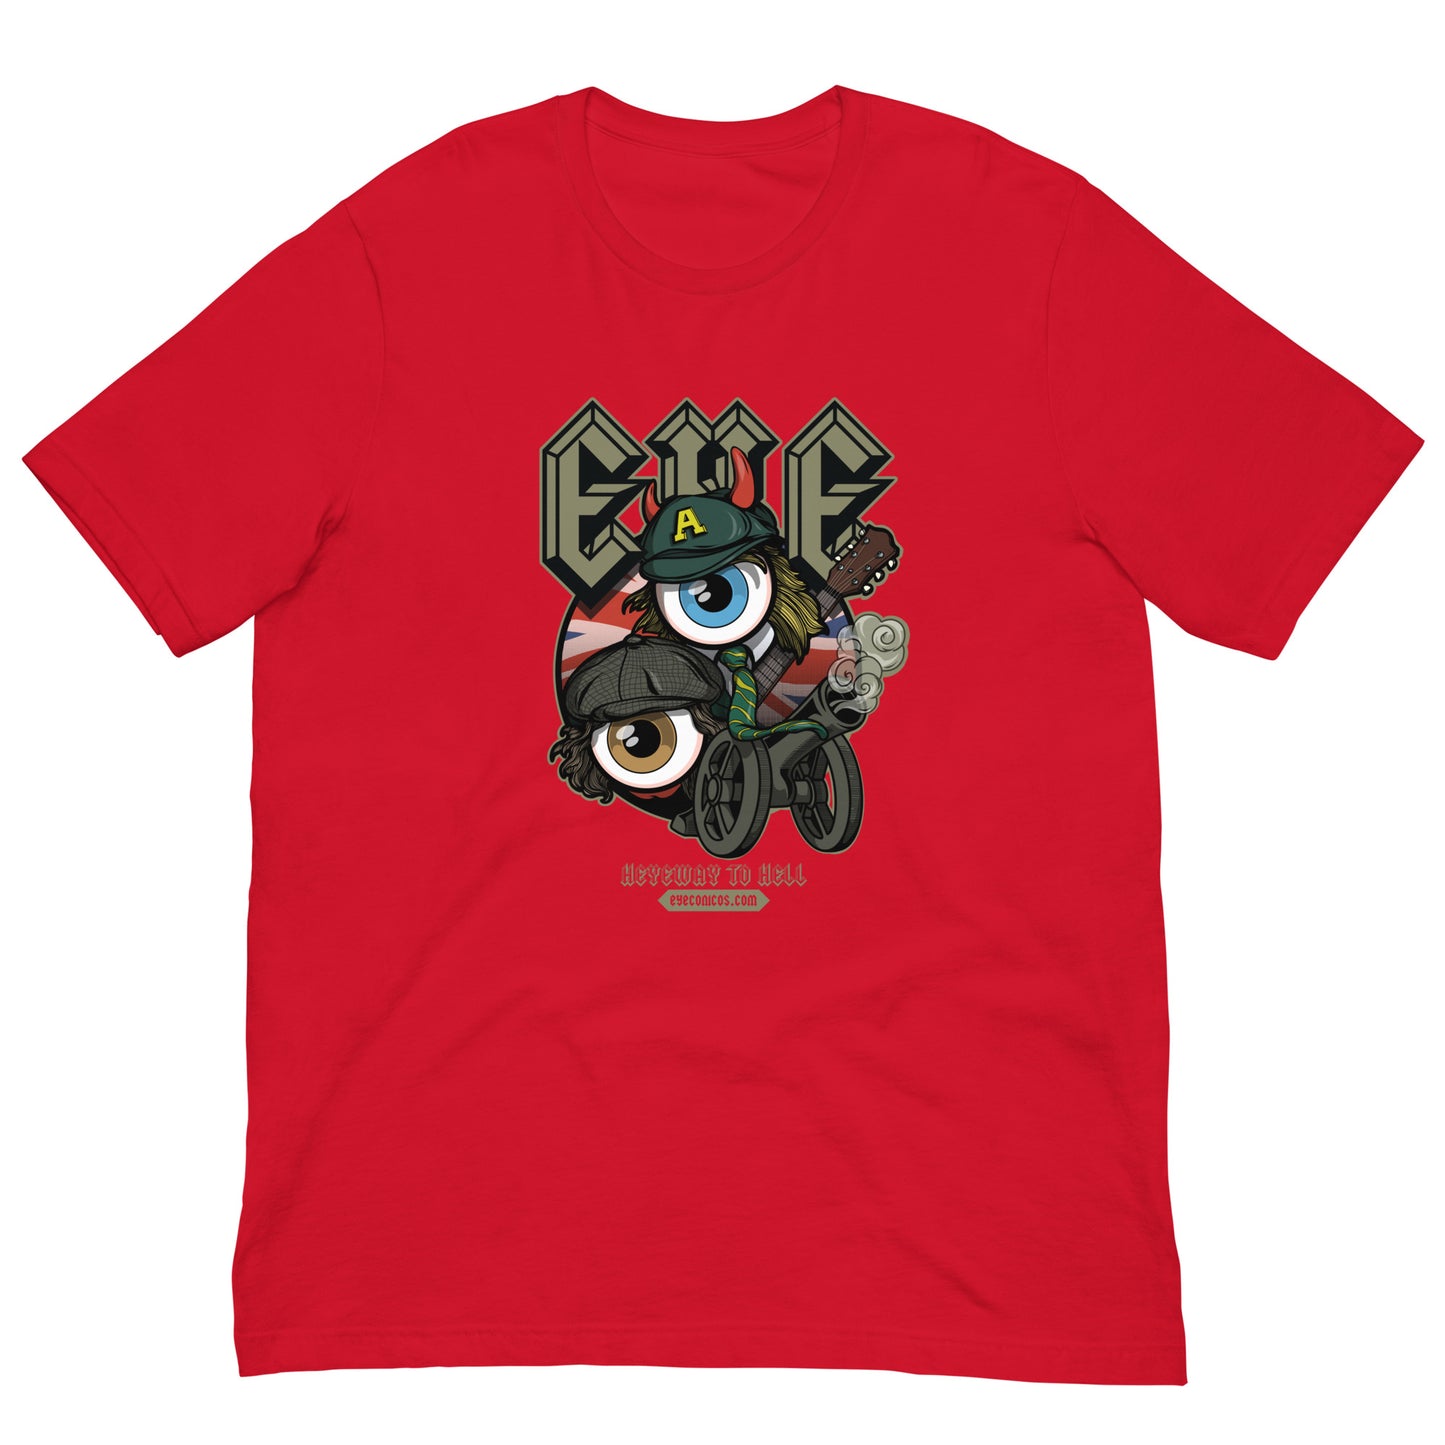 EYEC/DC T-Shirt